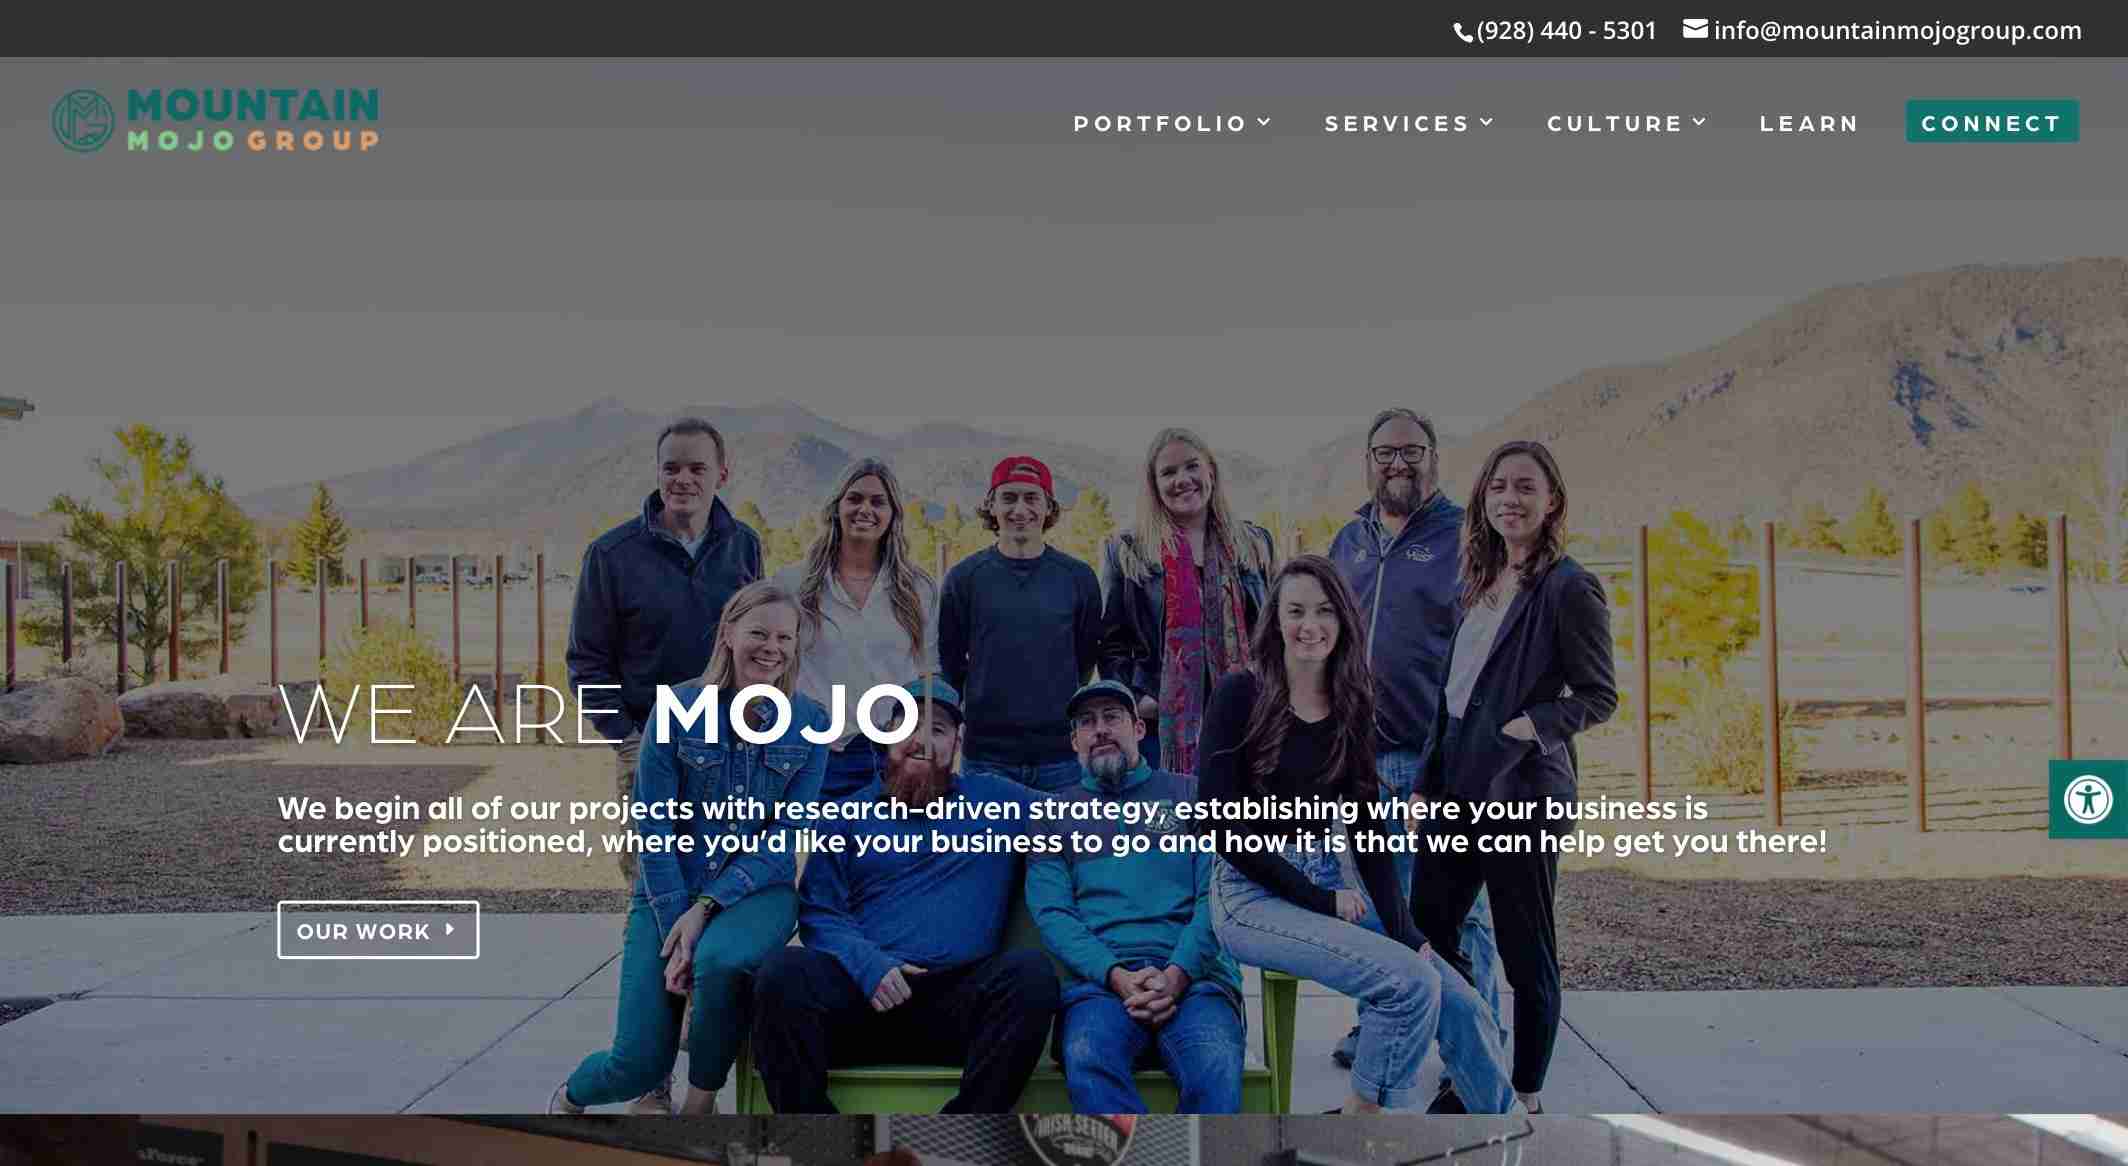 Mountain Mojo Group